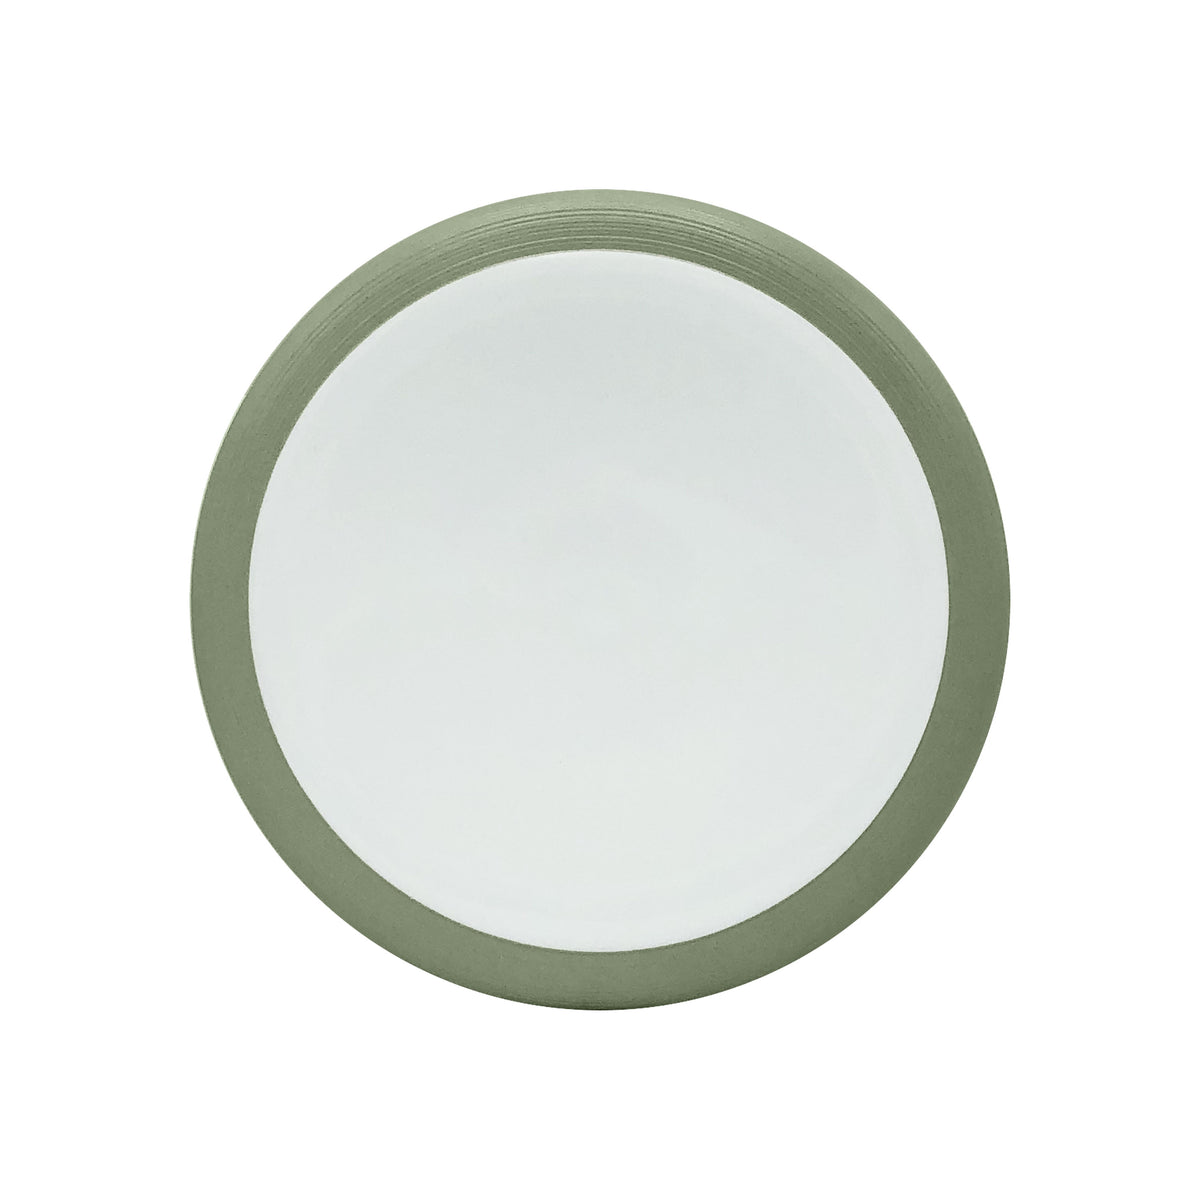 HEMISPHERE Khaki Green - Dinner plate mini Bubble